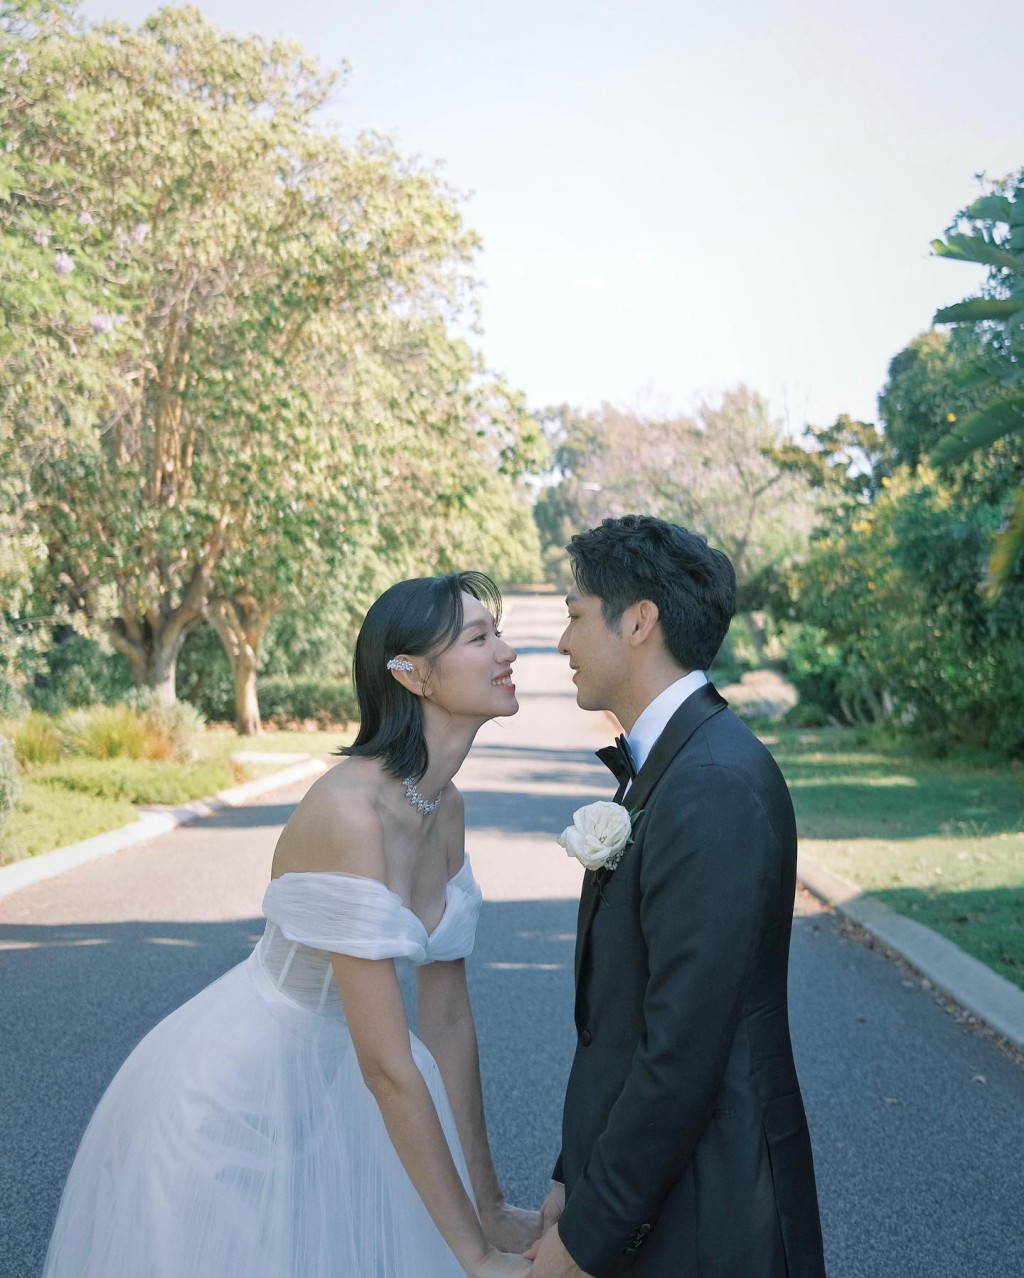 王丹妮去年与罗孝勇在澳洲补办婚礼。